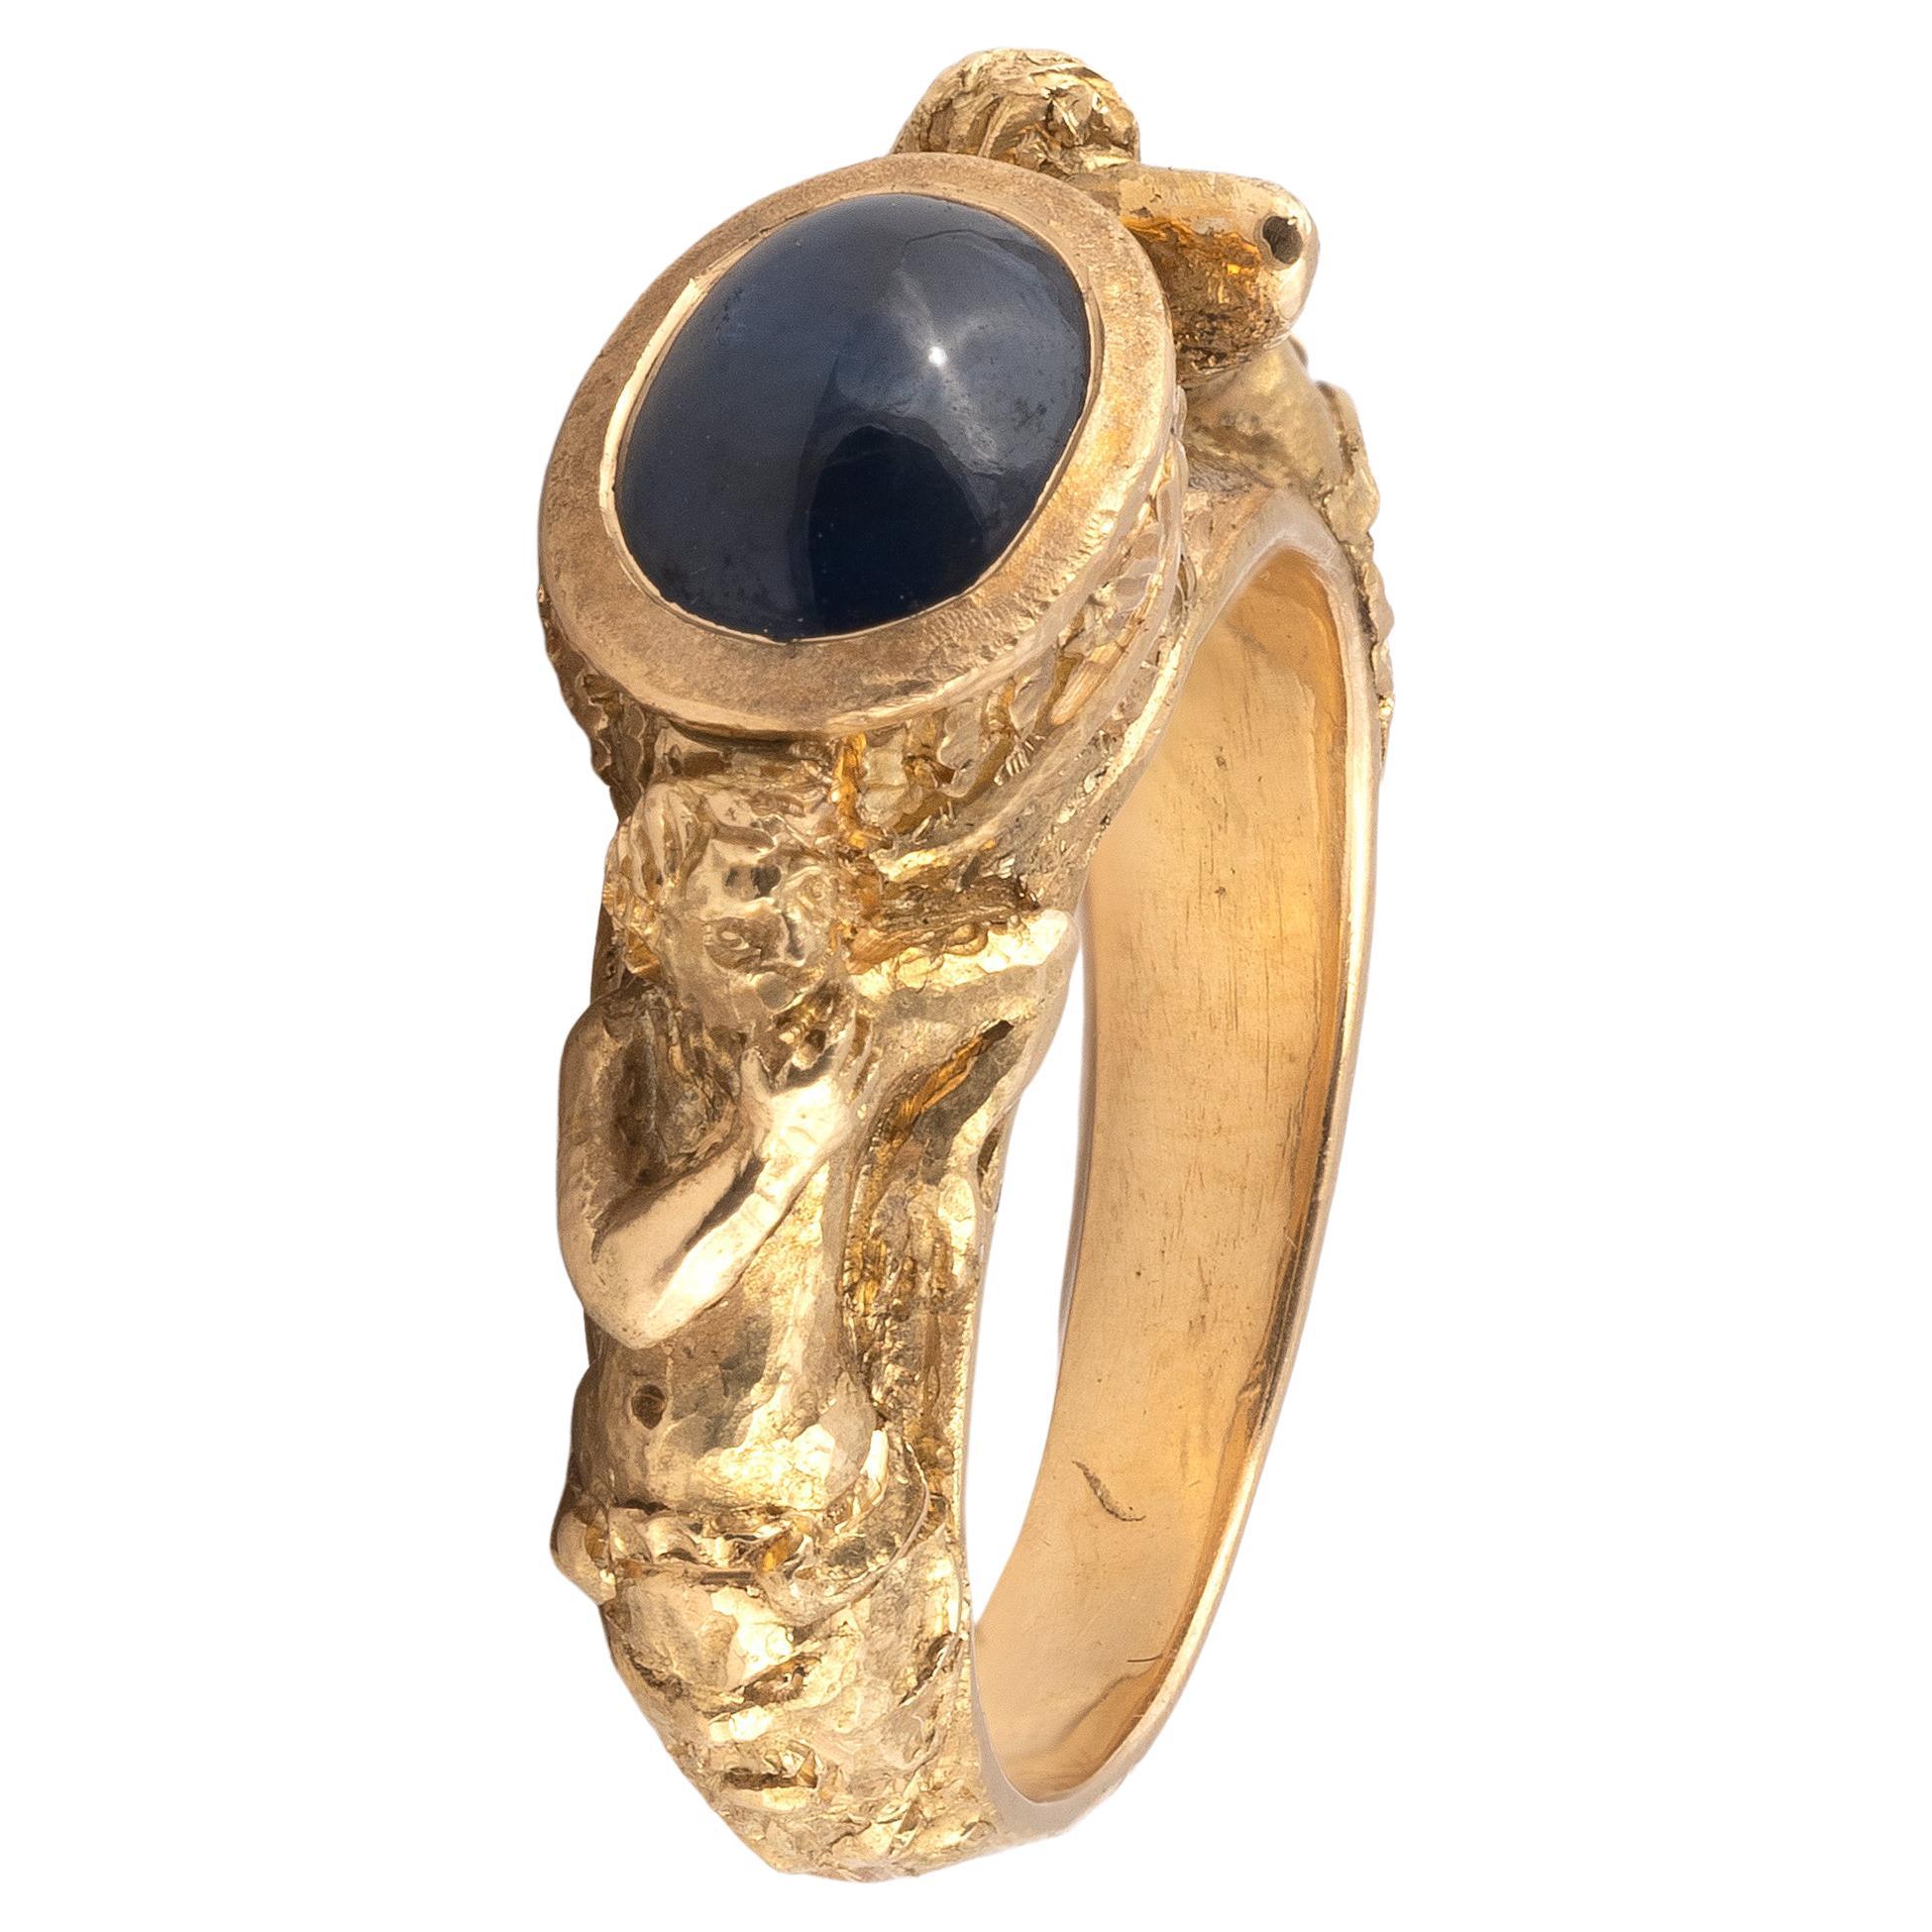 L'anneau représente une femme drapée parmi des feuillages, son bras entourant un saphir cabochon monté en collier.
Taille 7
Poids : 13,70gr.
